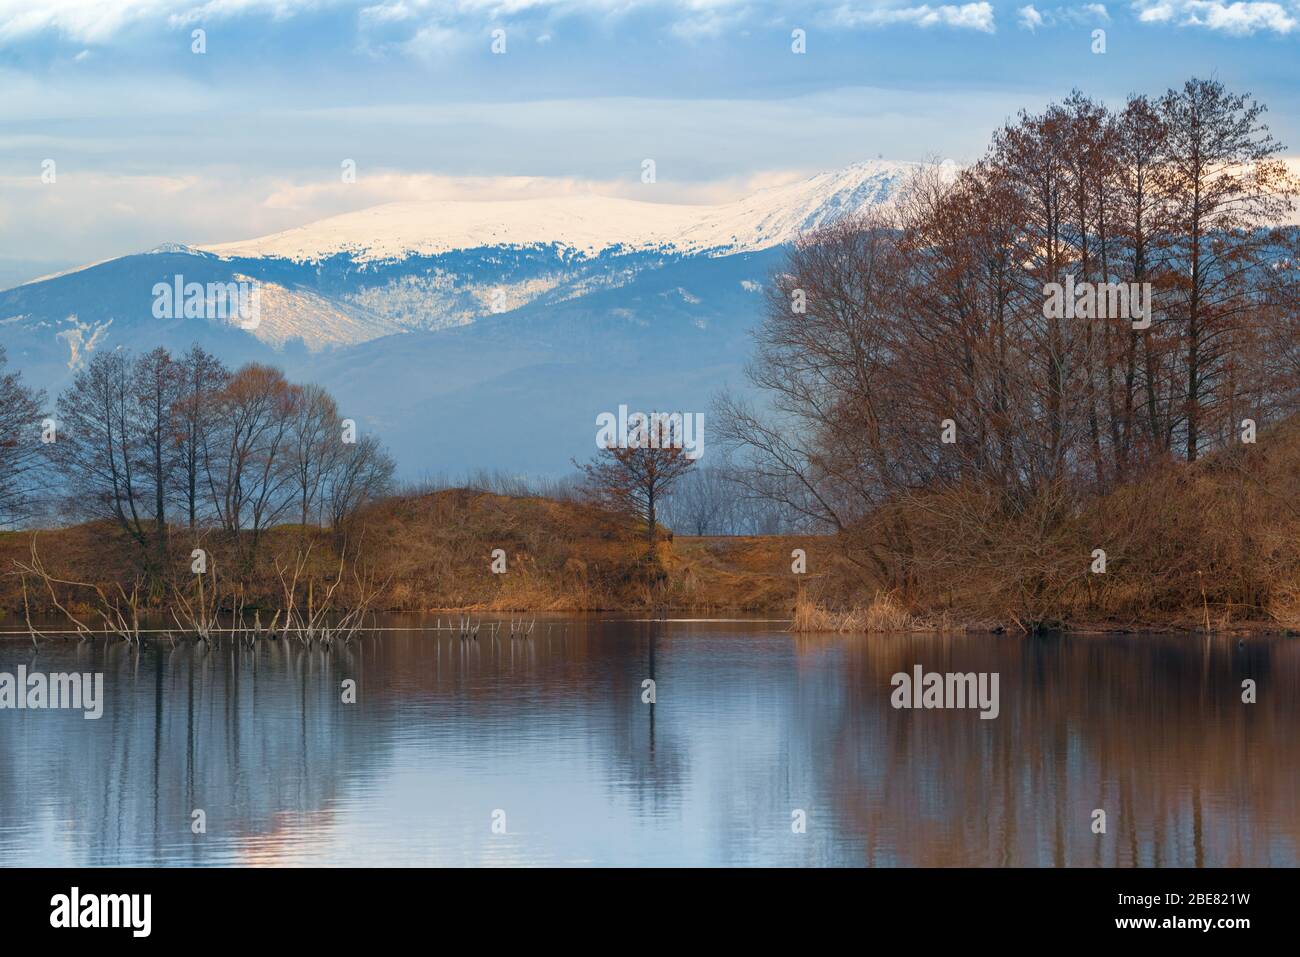 Schöne Seenlandschaft mit Spiegelung von Bäumen im Wasser vor einem schneebedeckten Berghintergrund Stockfoto